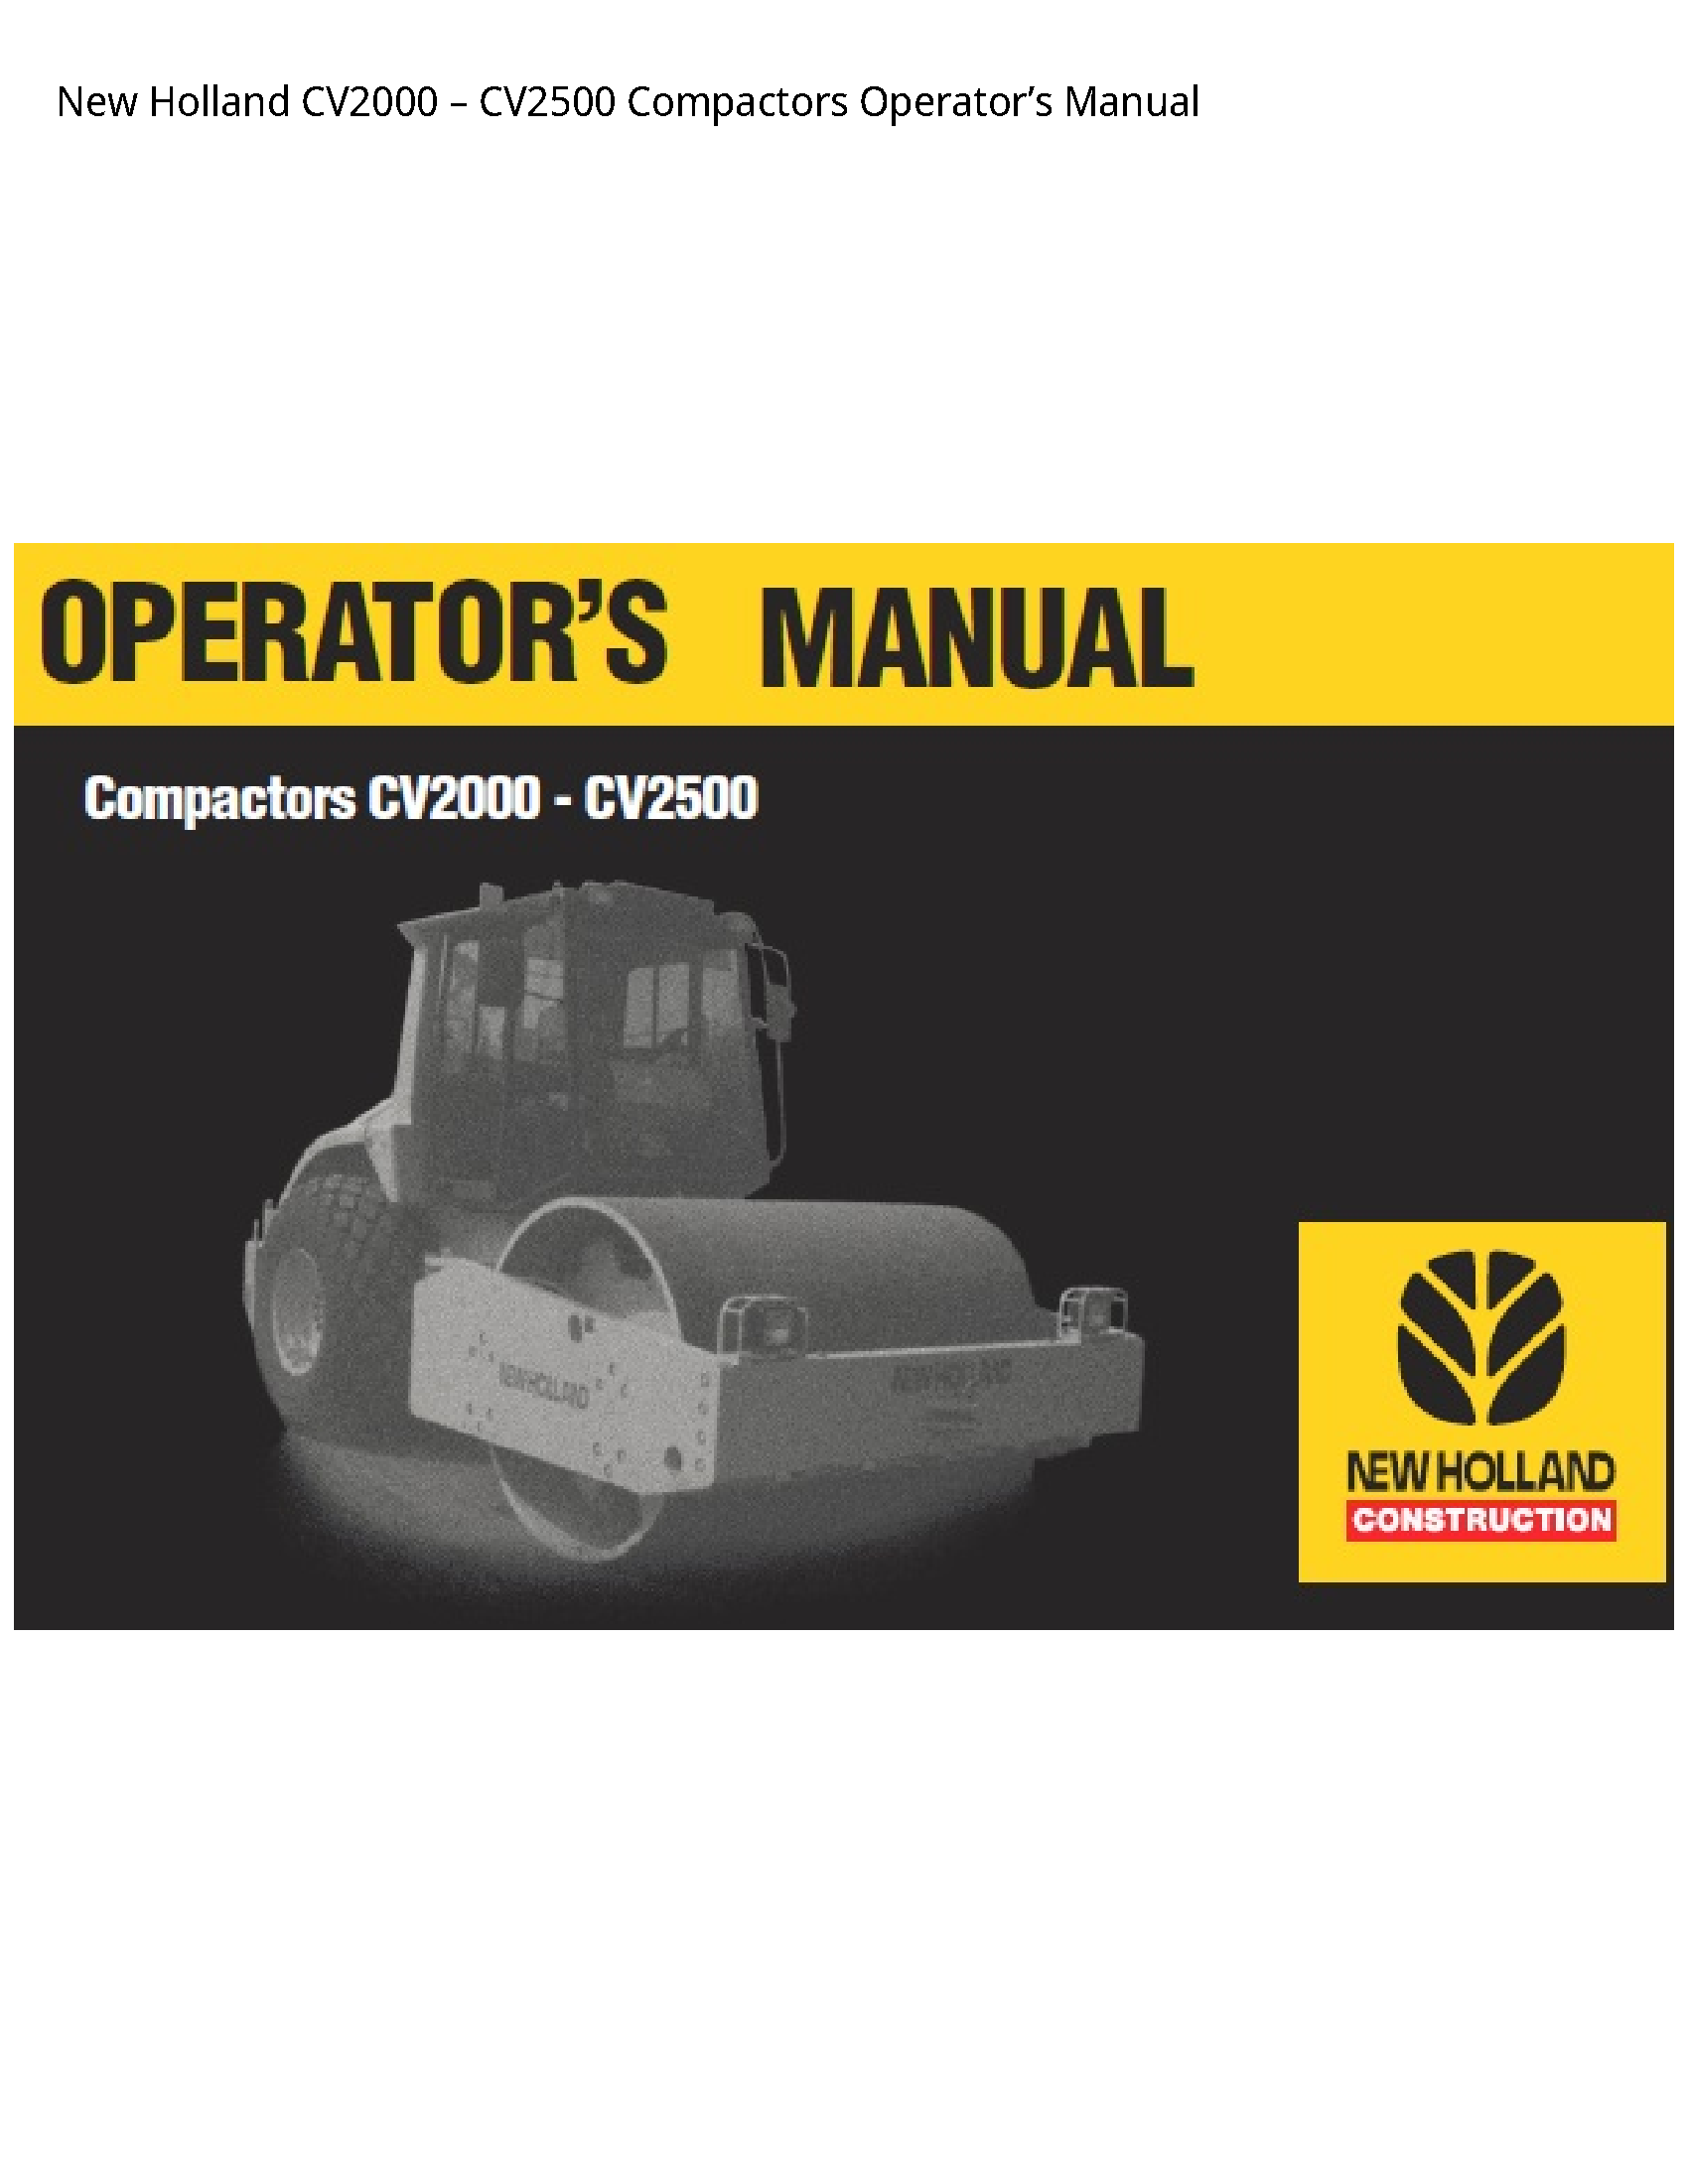 New Holland CV2000 Compactors Operator’s manual